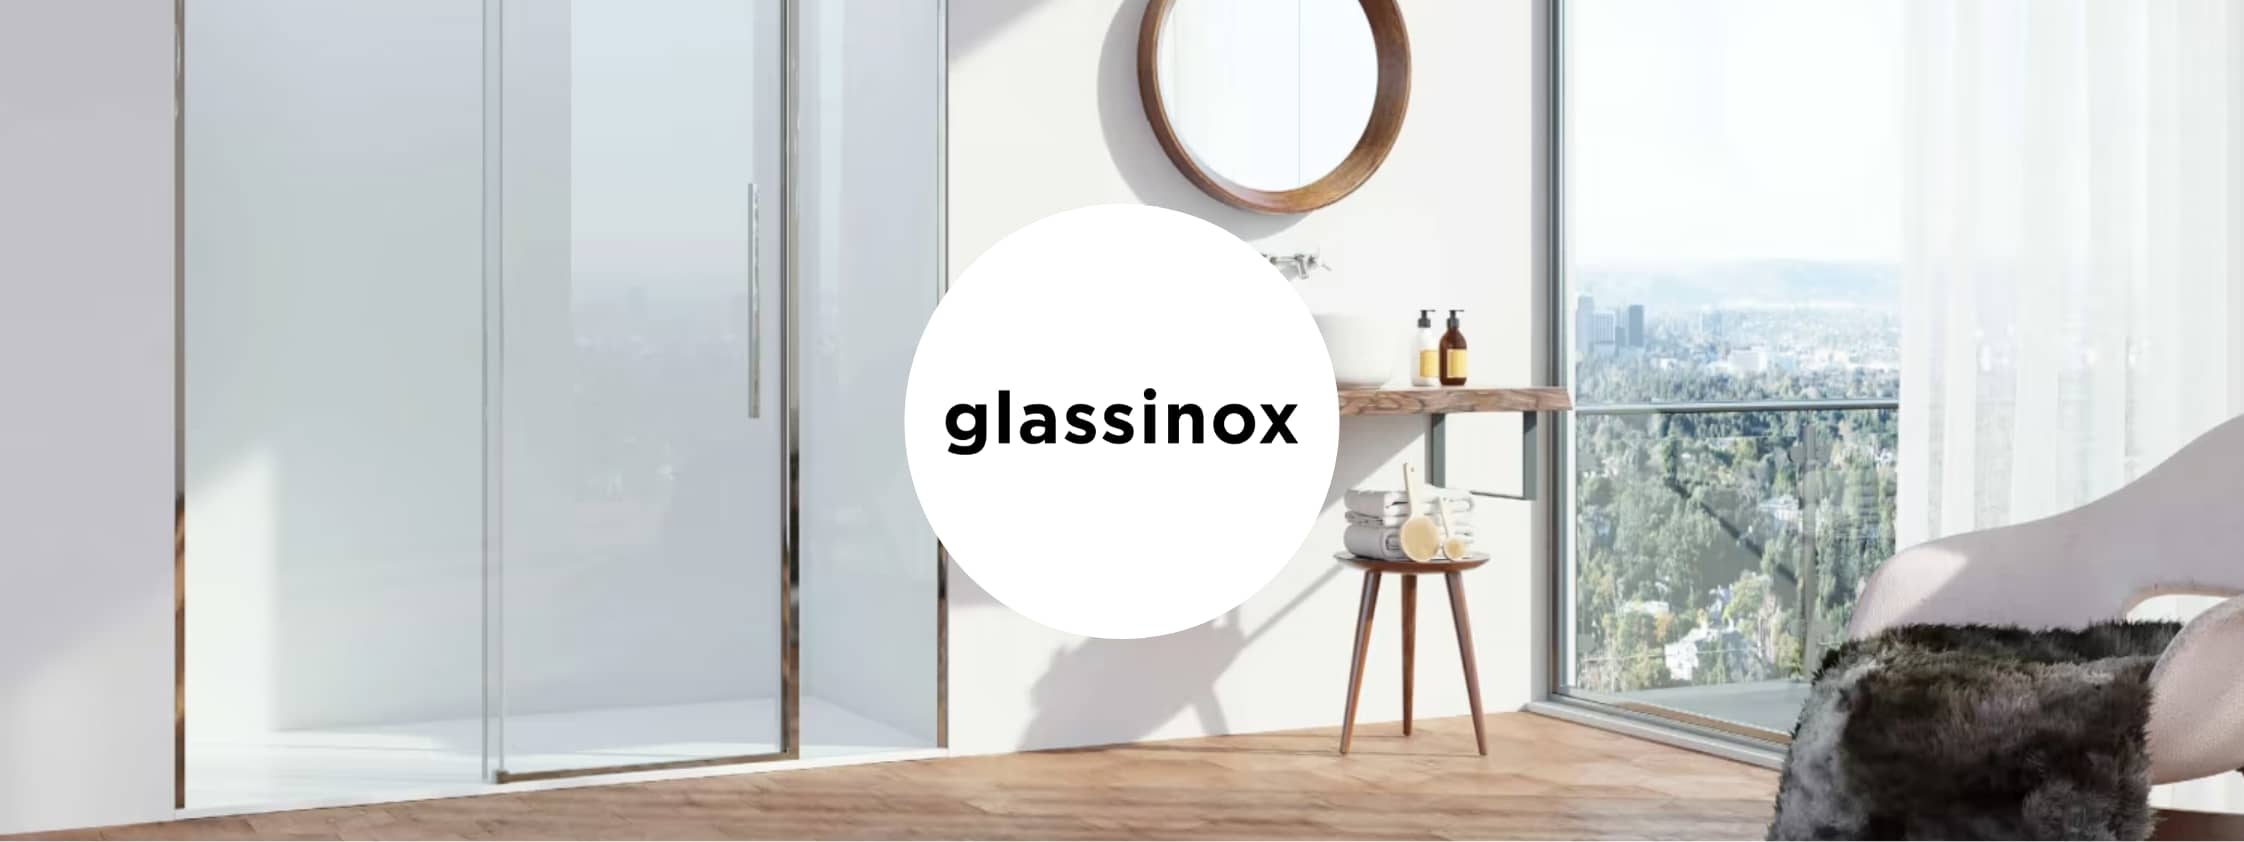 Colecciones y productos de la marca - Glassinox